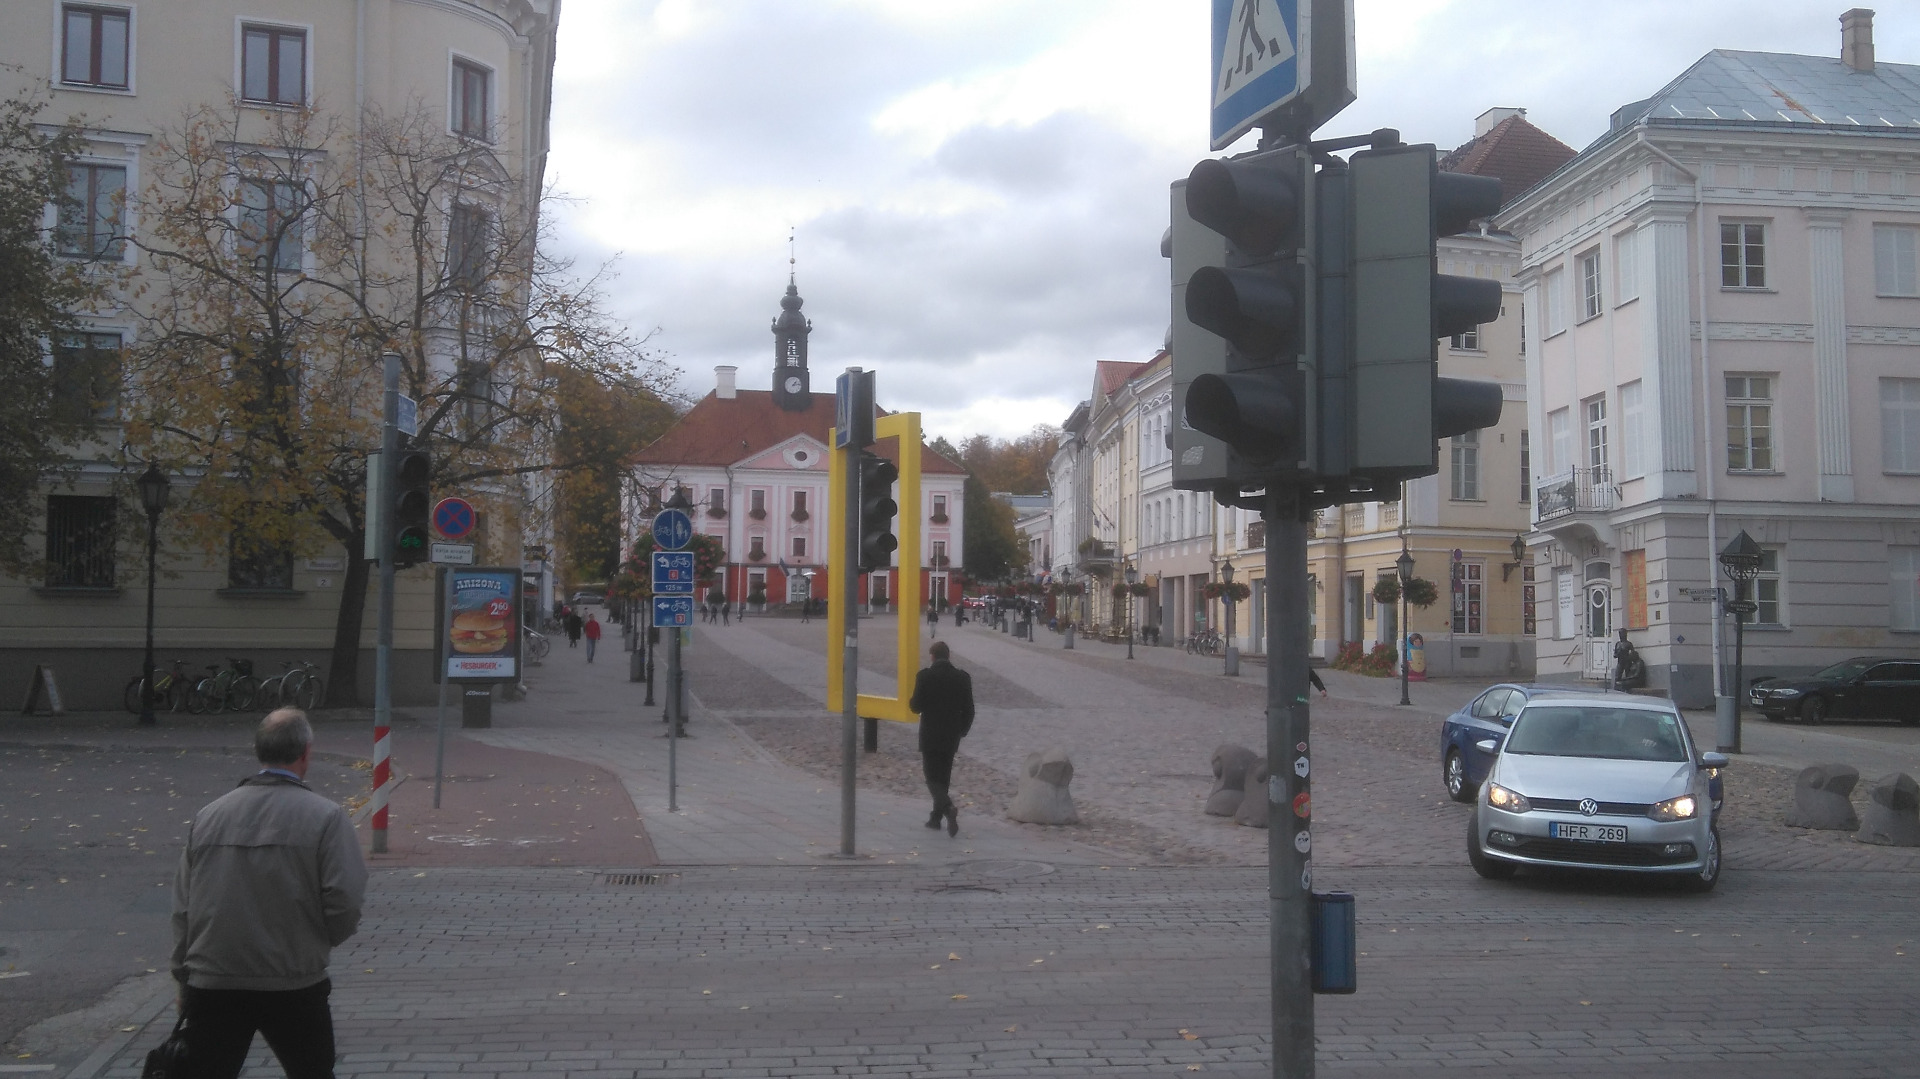 Estonia : Tartu Raekoda = Raekoda rephoto